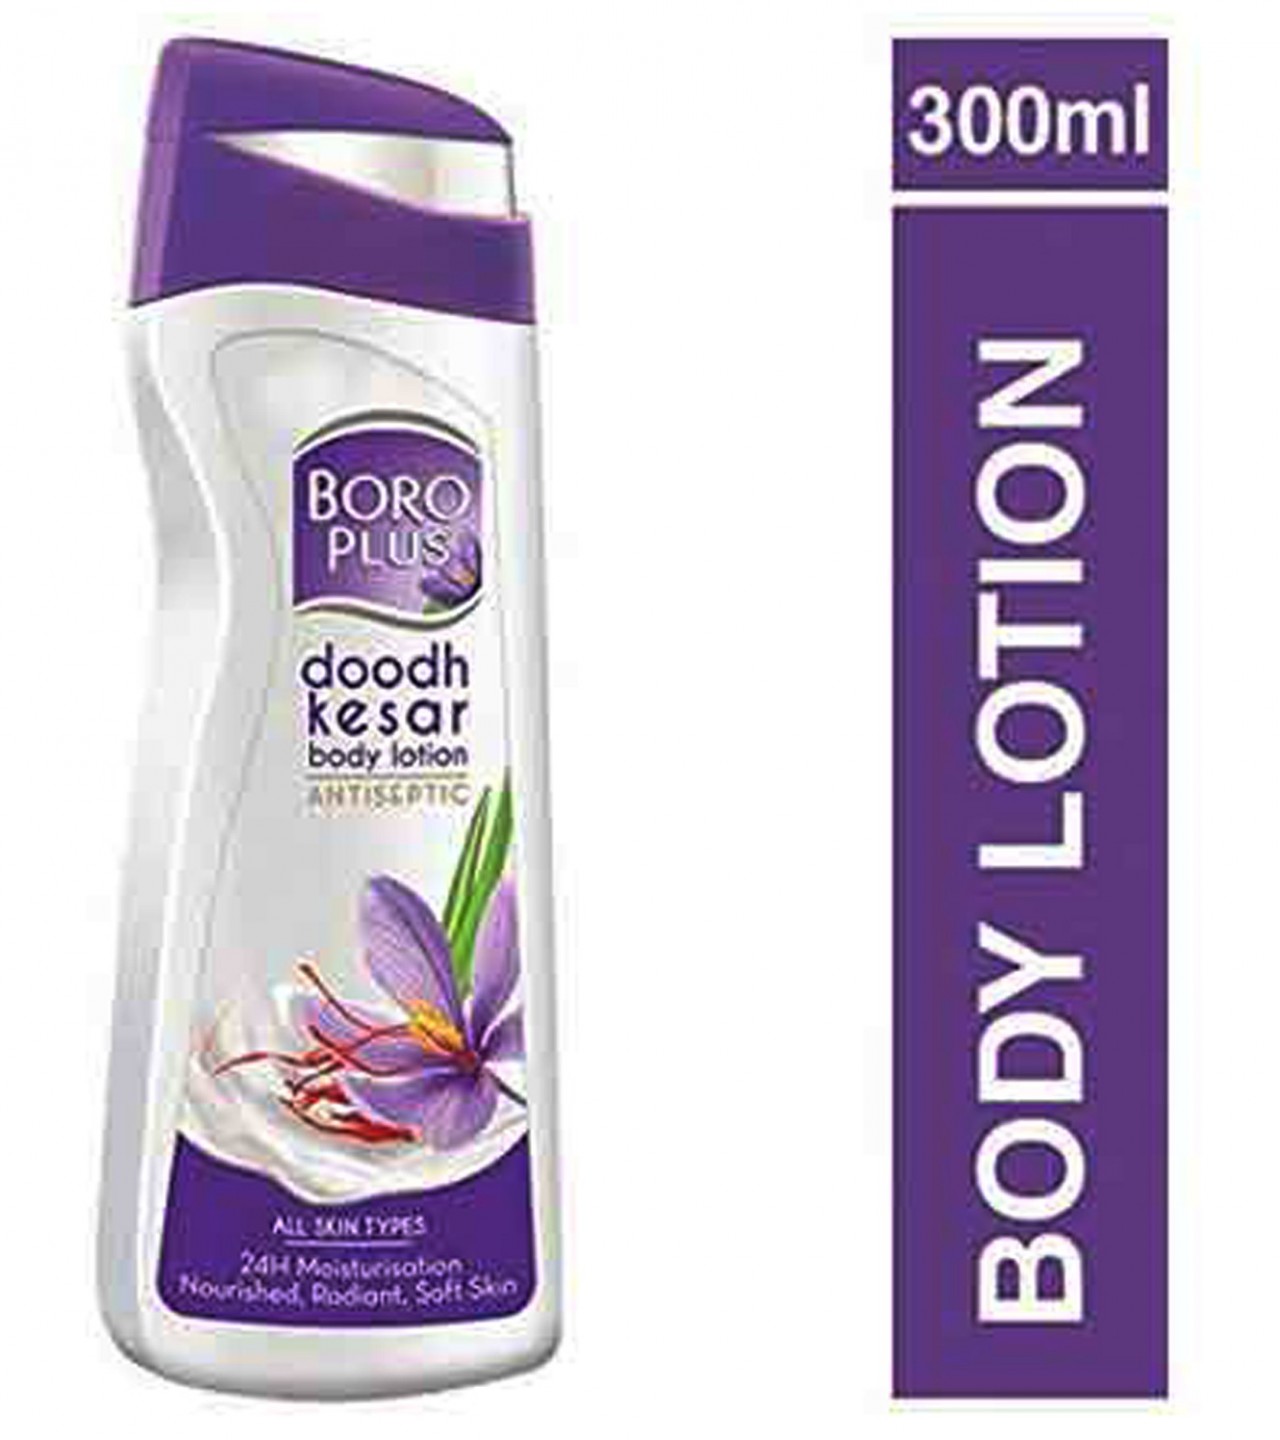 Boro Plus Dodh Kesar Antiseptic Lotion - 300 ml